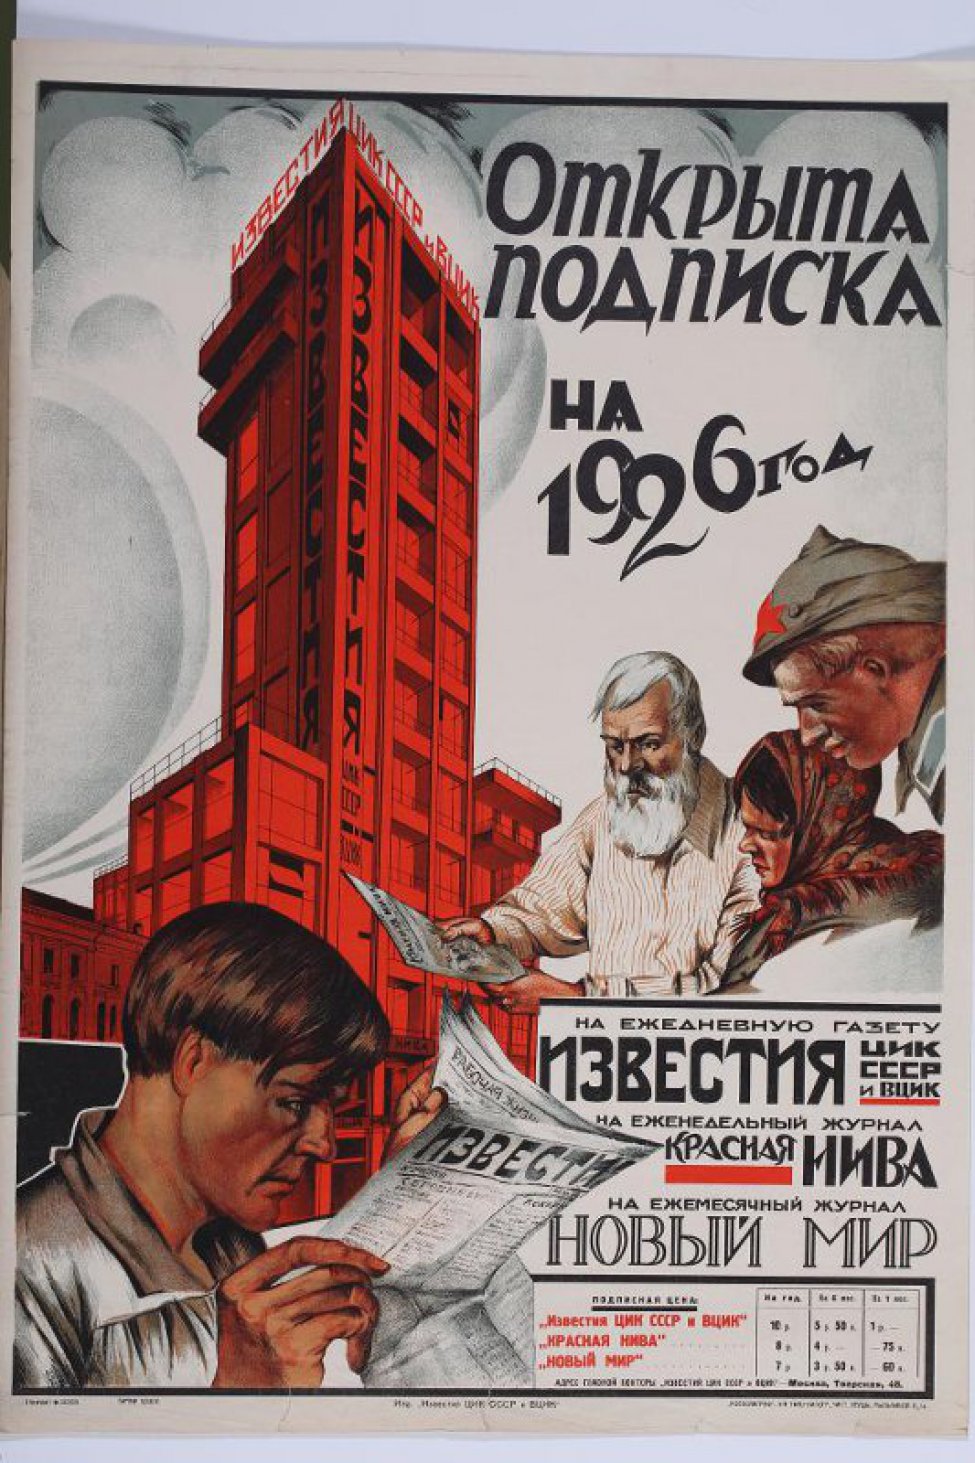 Изображен красный дом с высокой башней. Внизу молодой человек за чтением газеты. Справа двое мужчин и женщина читают журнал: Красная Нива"."